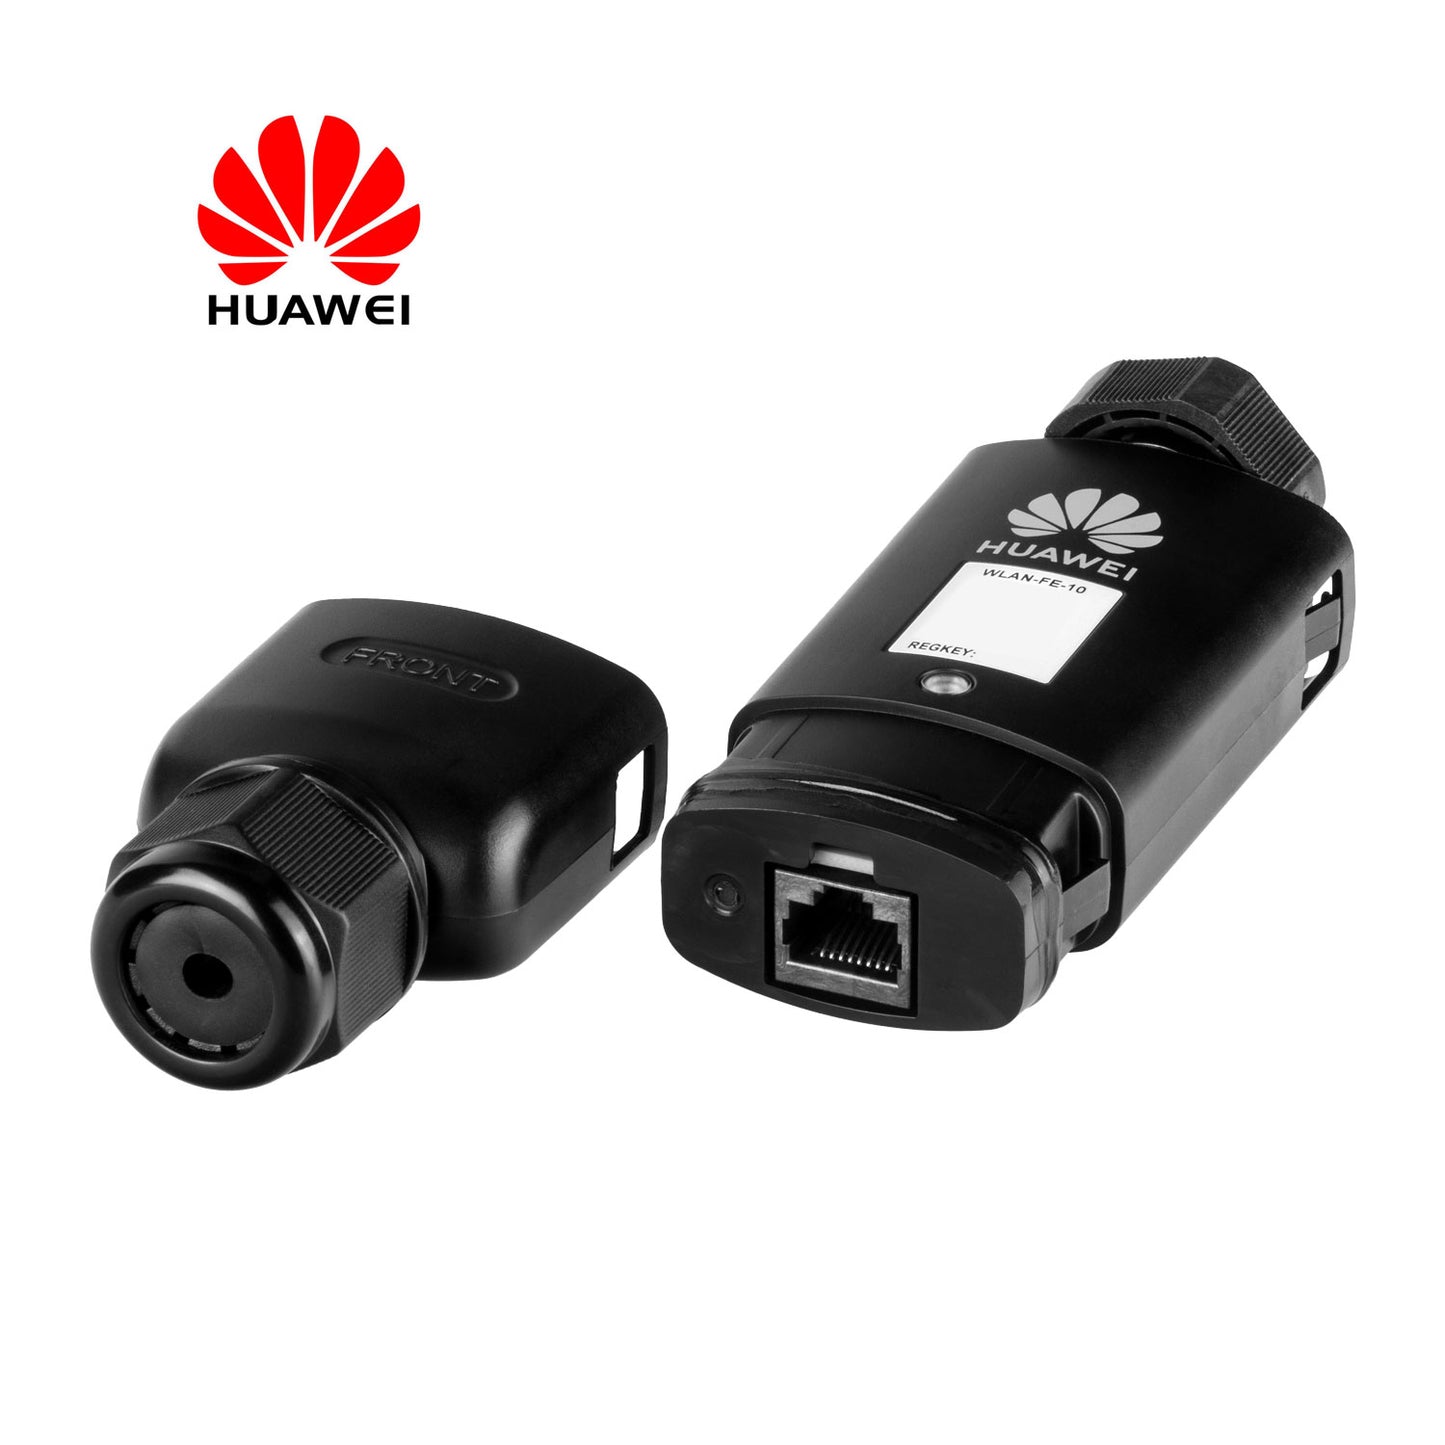 Huawei SDongleA-05wlan-fe